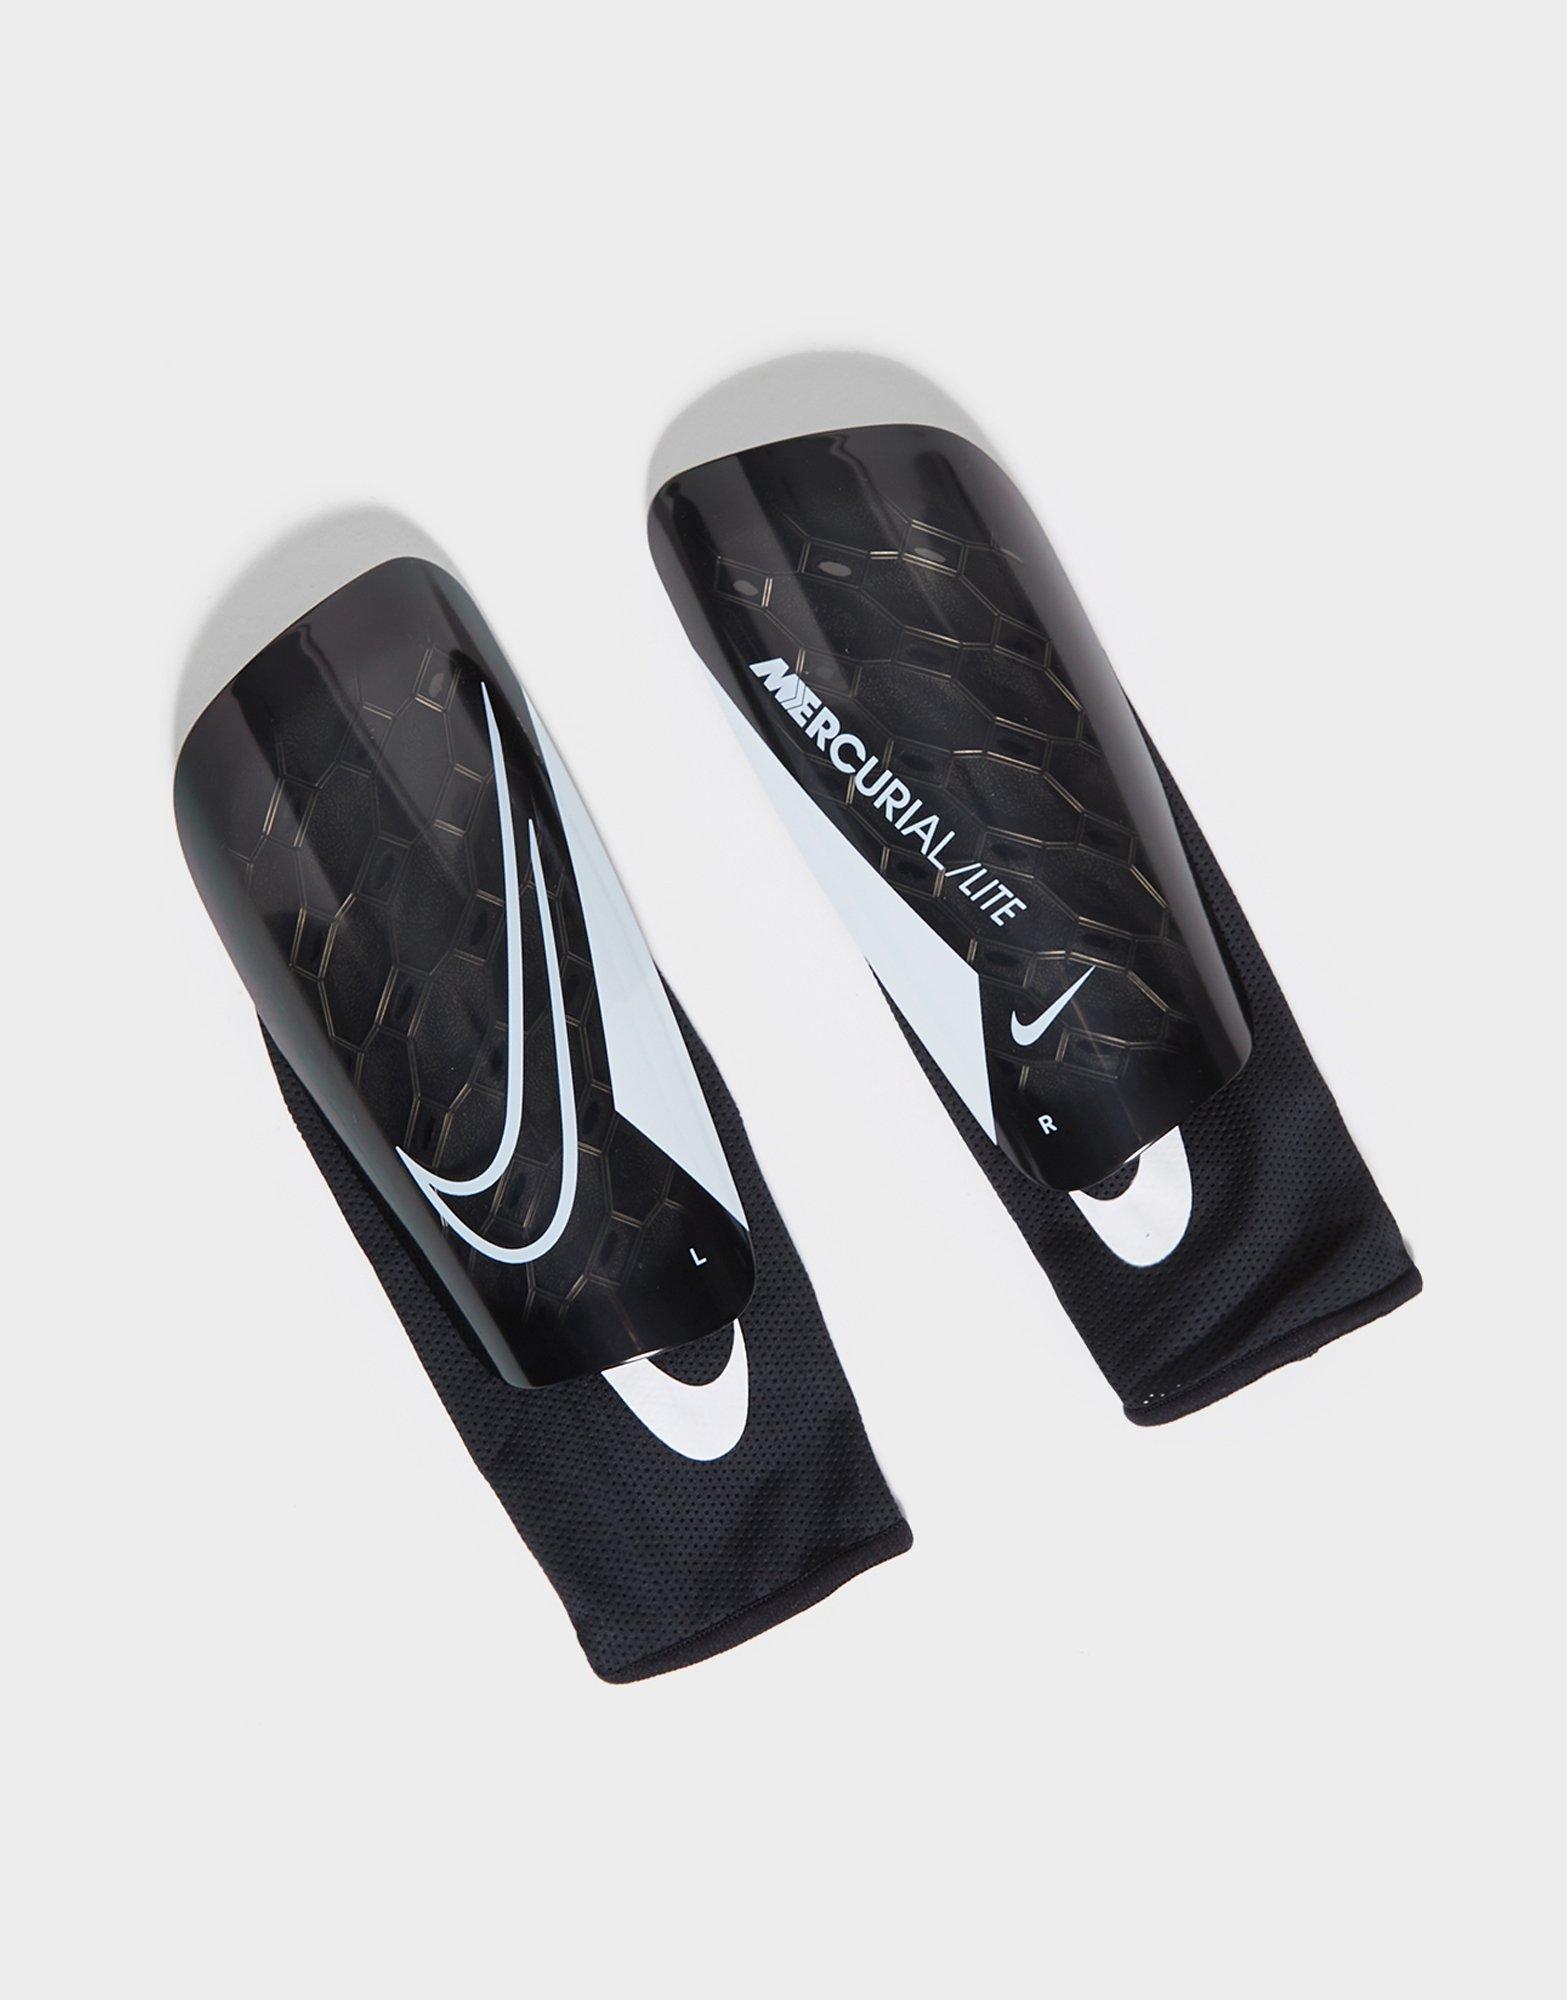 Buy Black Nike Mercurial Lite Shin Guards